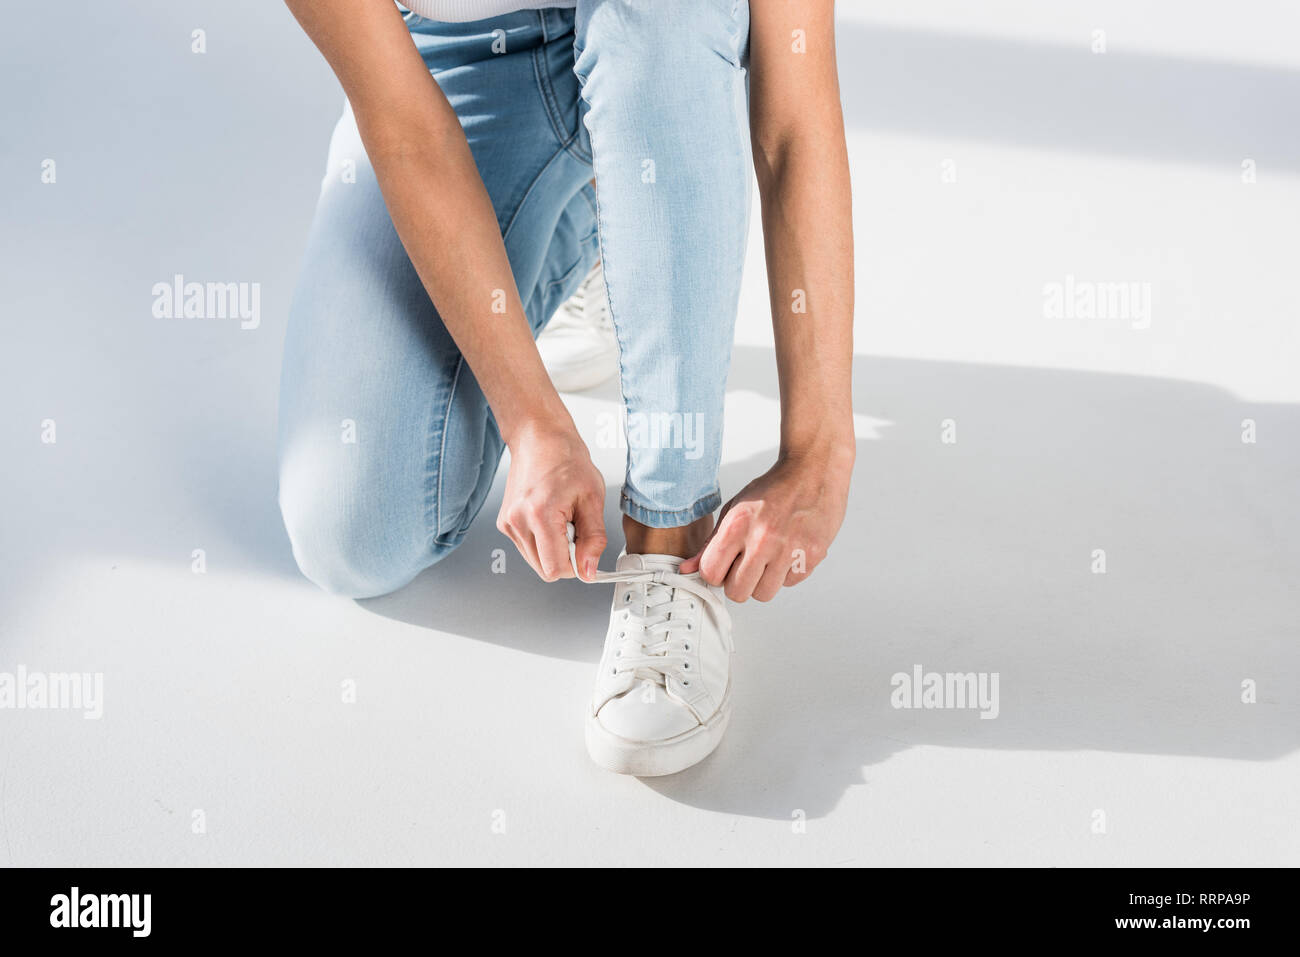 Teilweise mit Blick auf die Frau in Jeans Schnürsenkel binden  Stockfotografie - Alamy